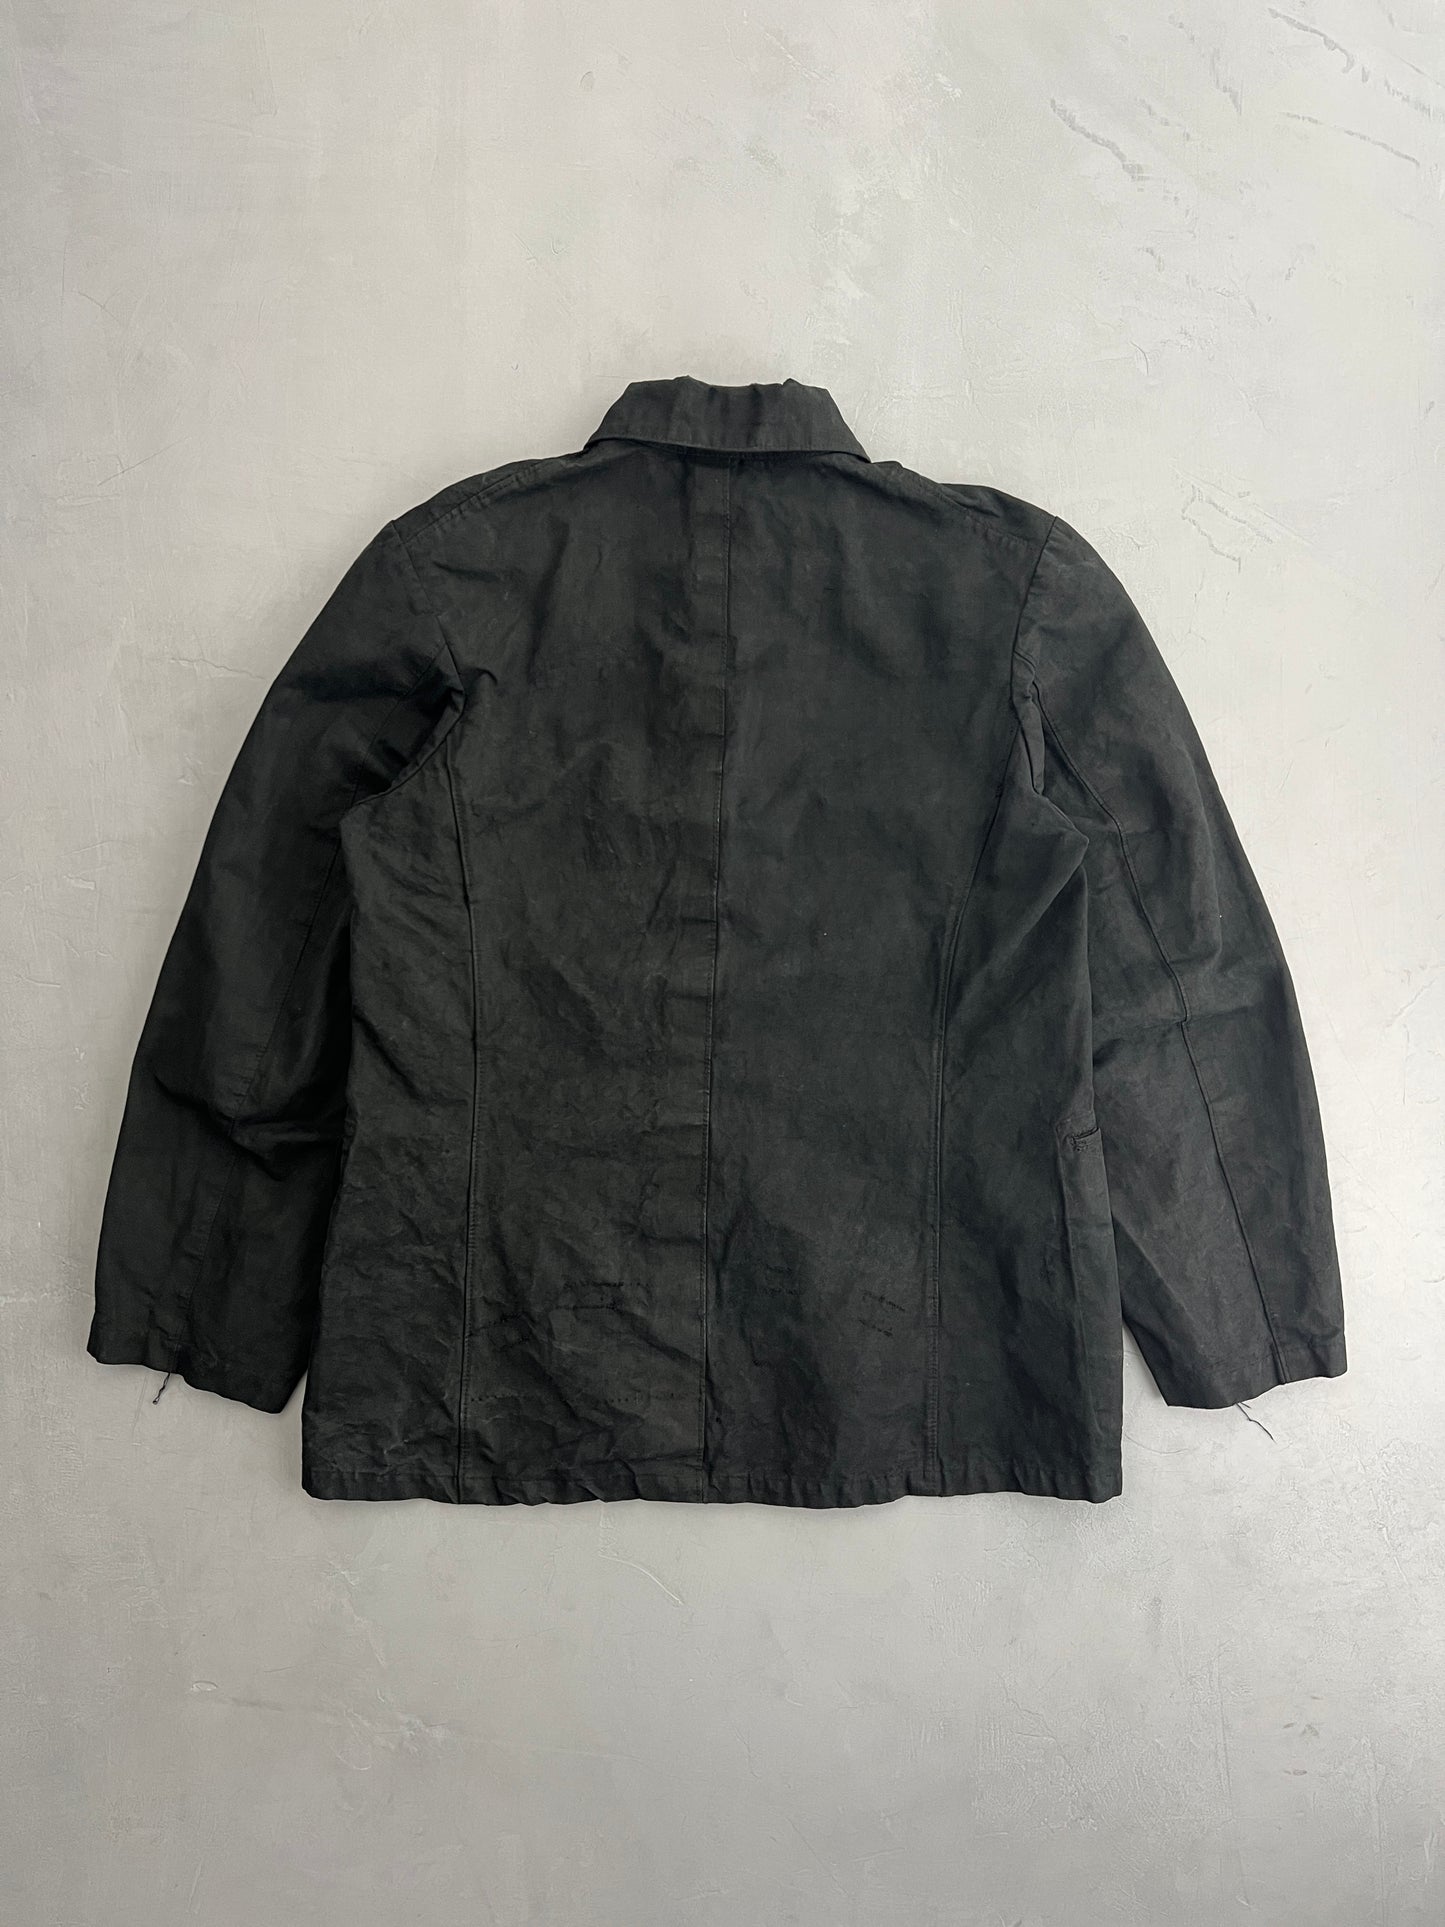 Overdyed 40's Japanese Army Jacket [S]